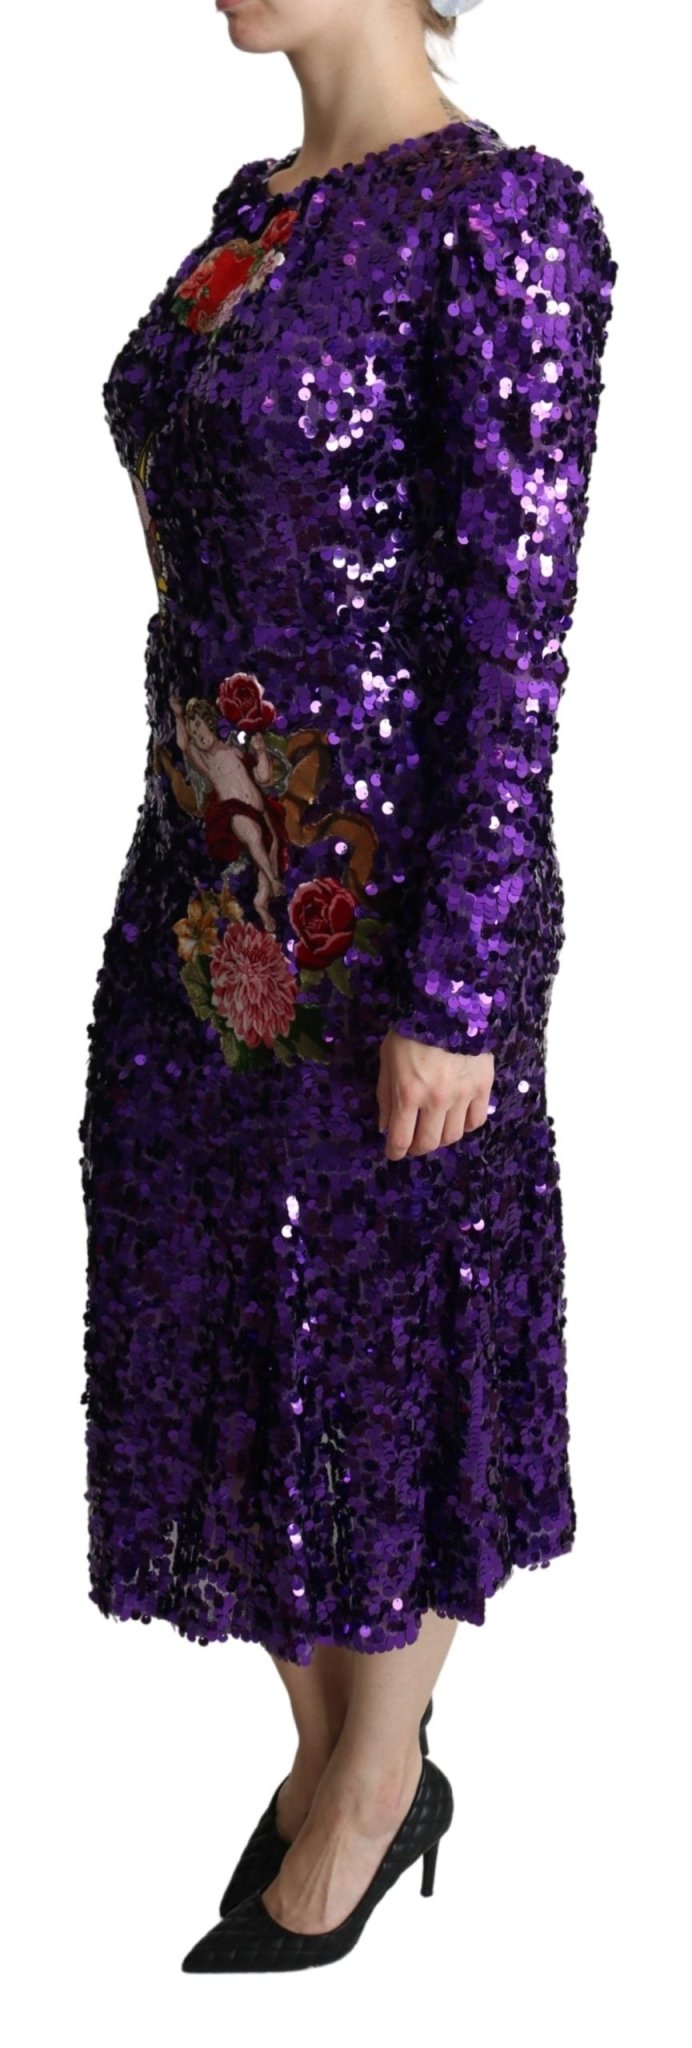 Purple Sequined Mermaid Midi Embellished Dress - Avaz Shop